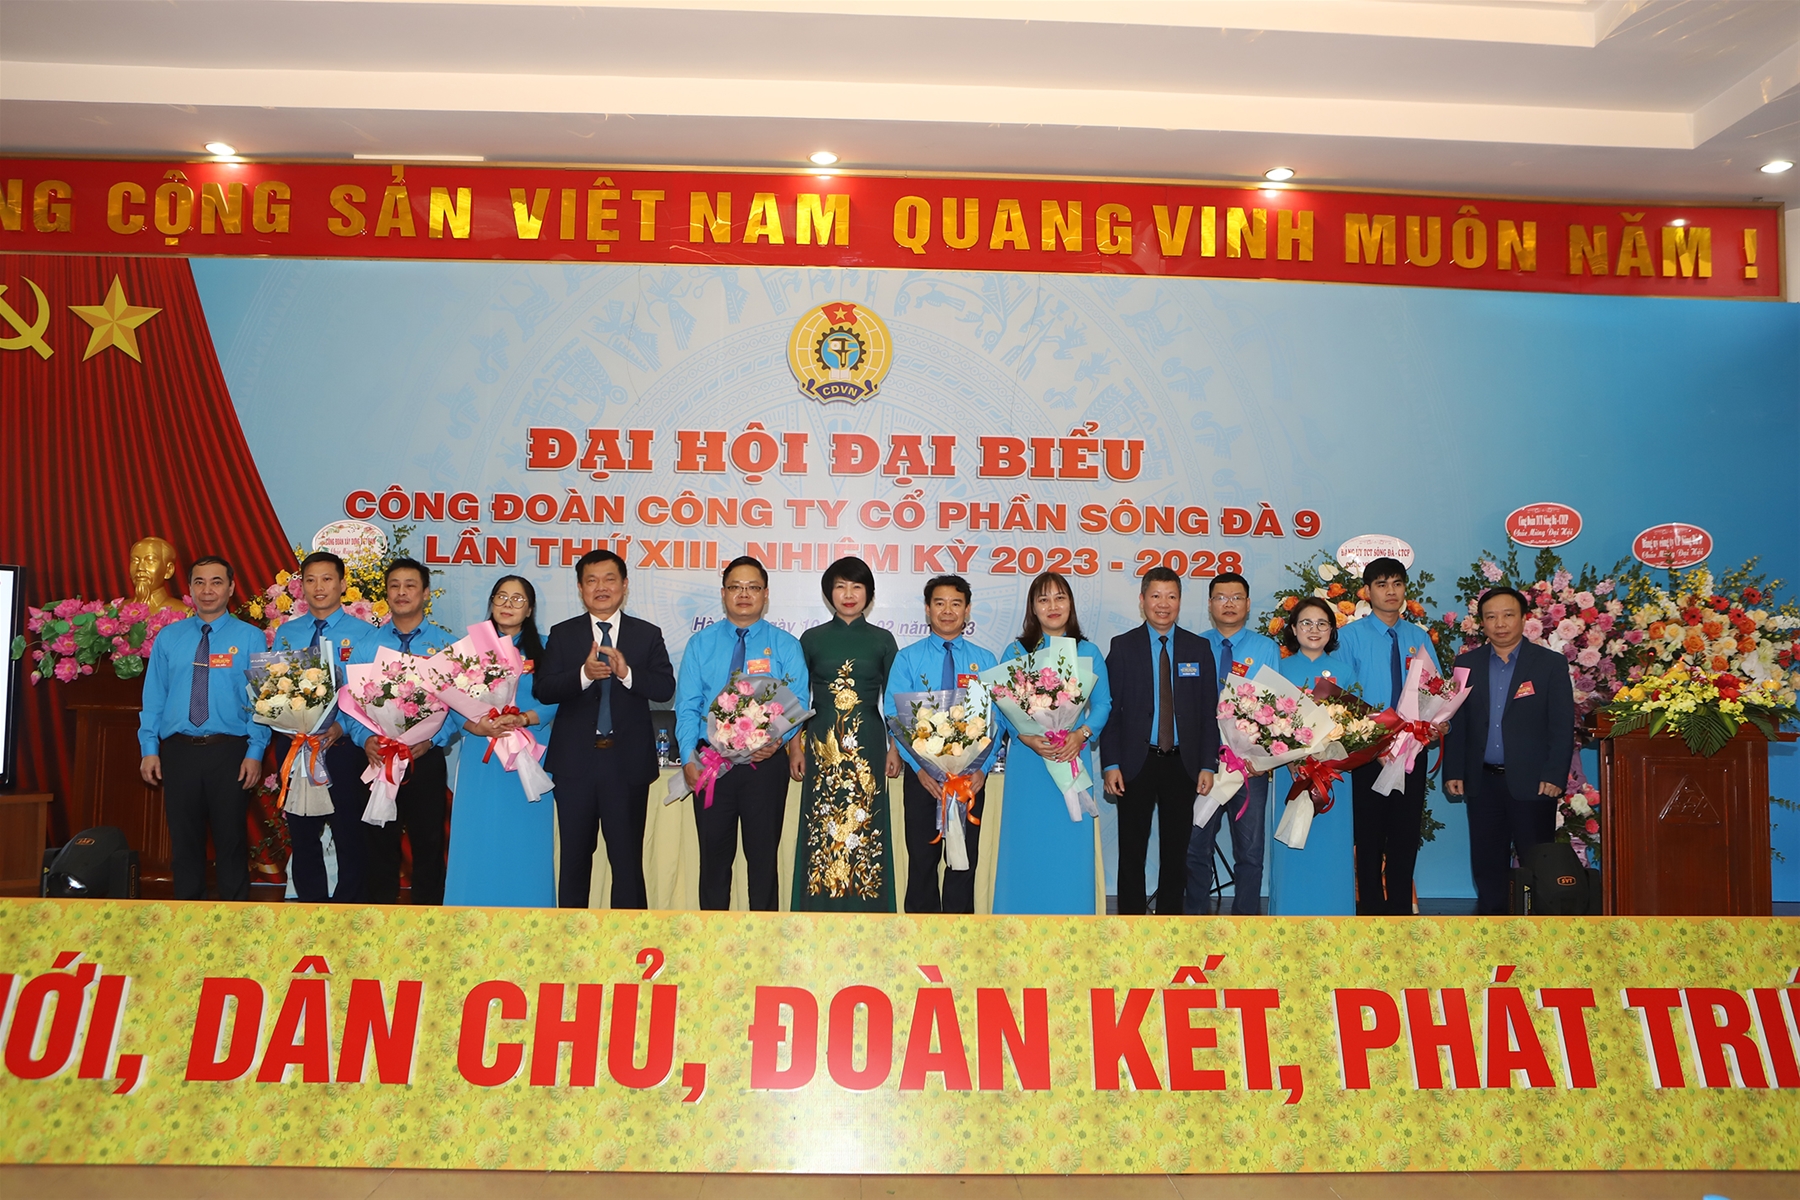 Công đoàn Công ty Sông Đà 9 tổ chức Đại hội lần thứ XIII: Đại hội điểm cấp cơ sở của ngành Xây dựng